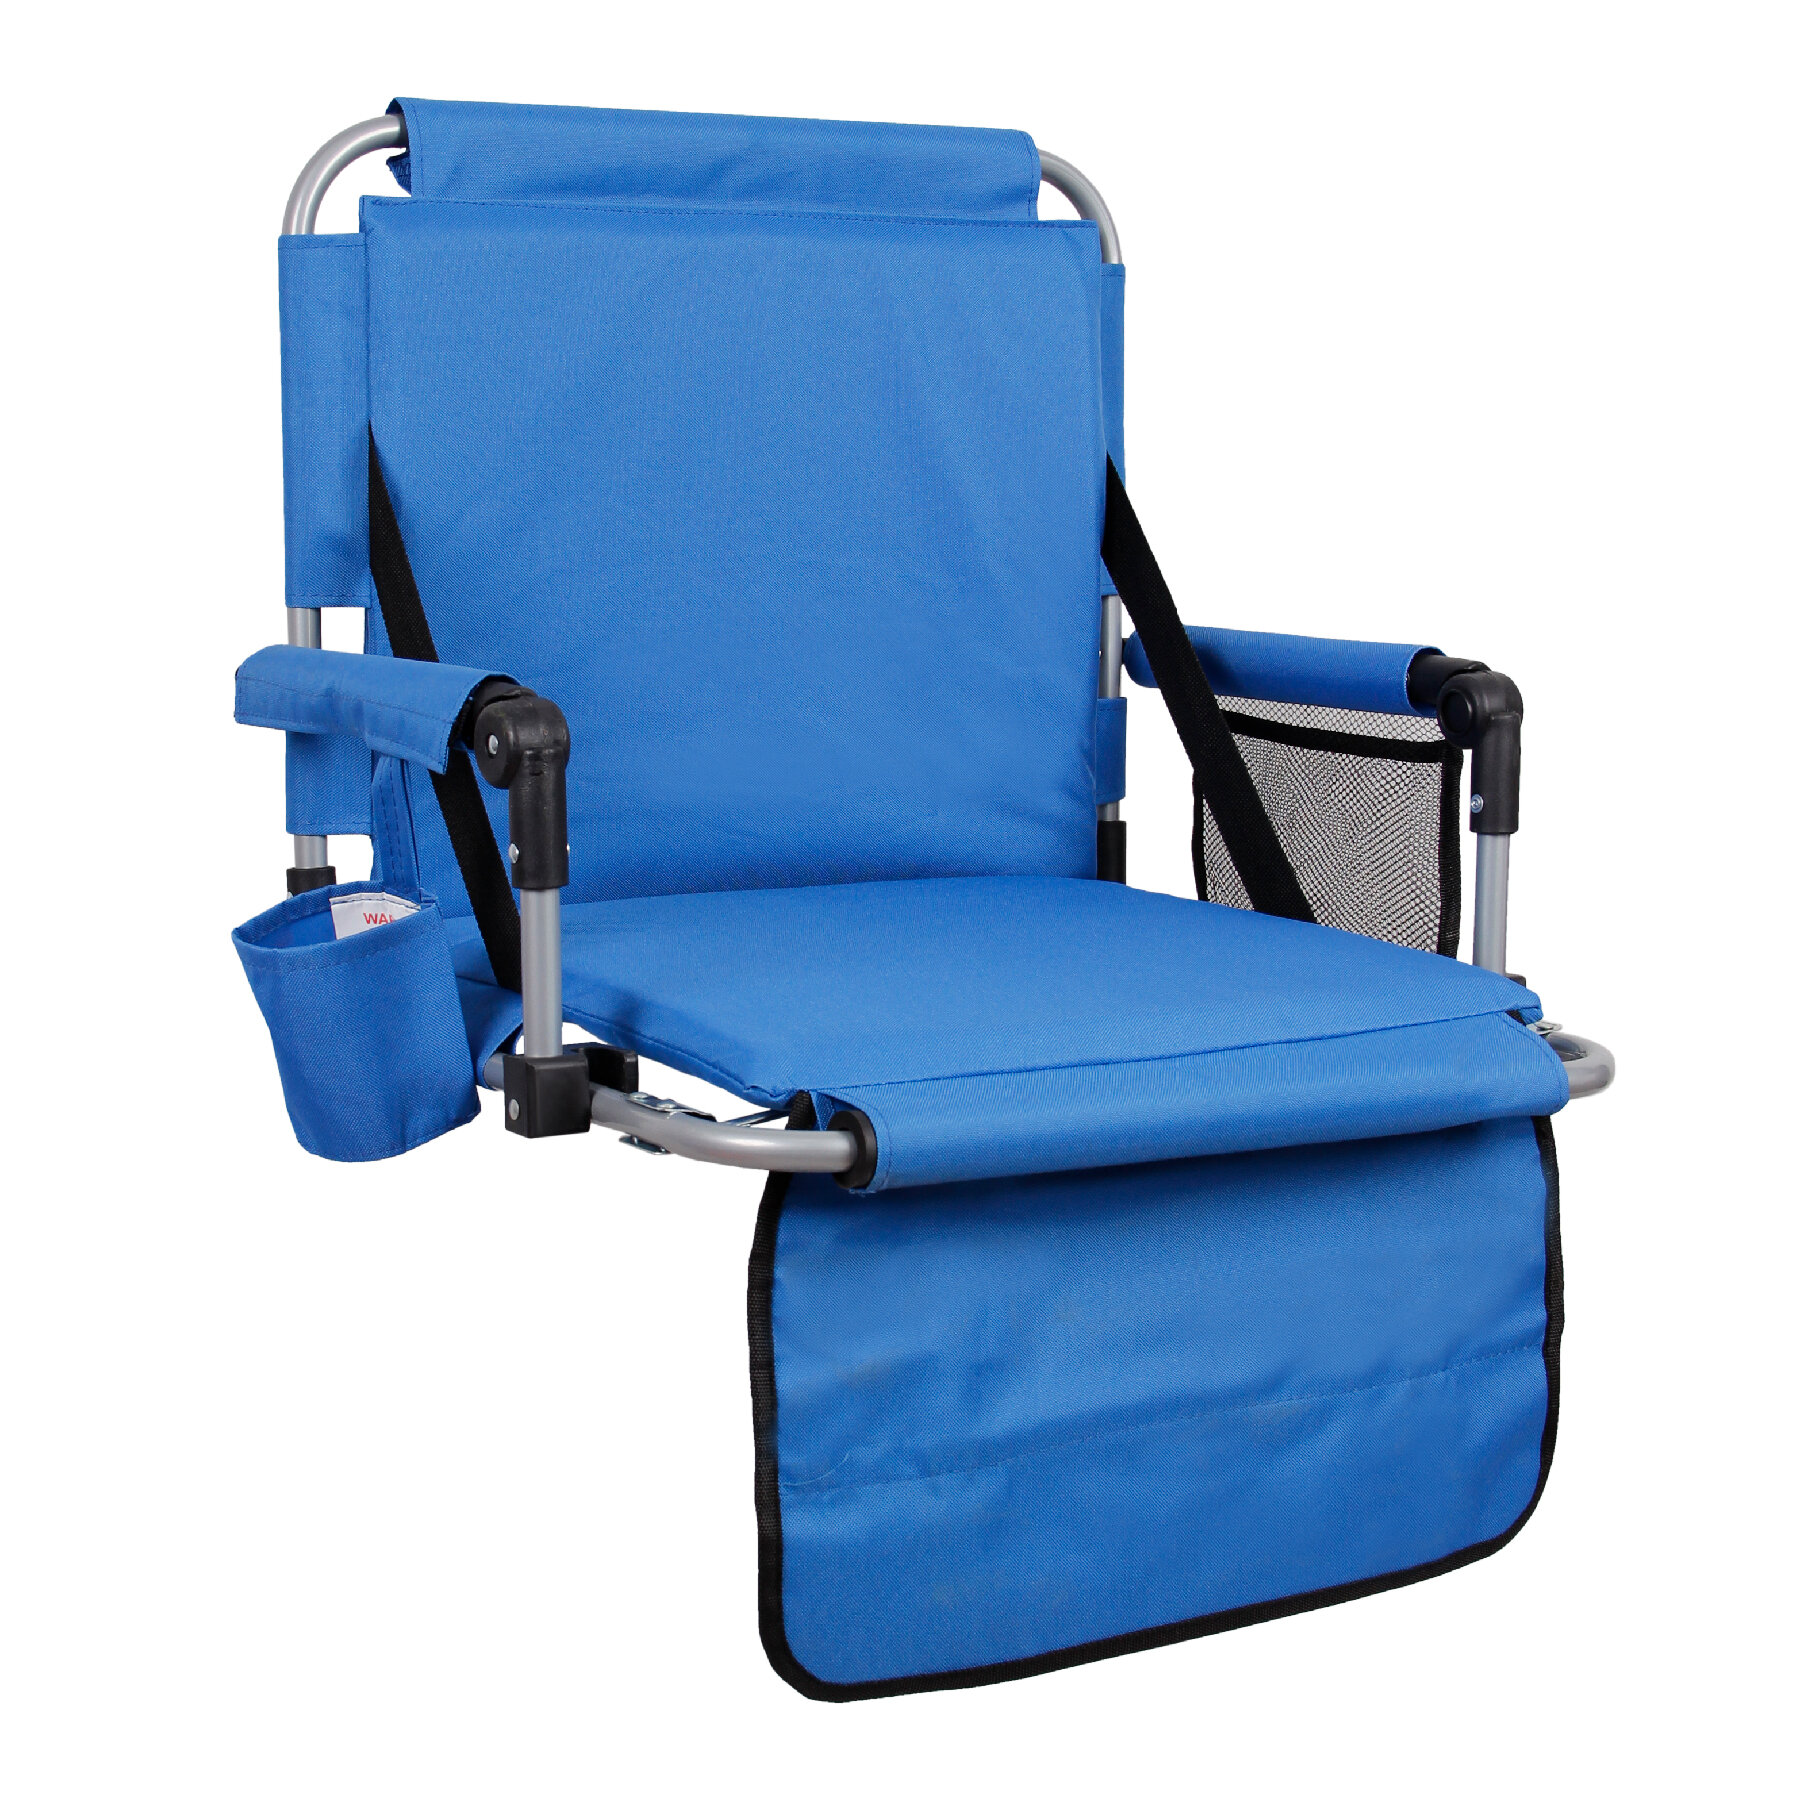 Green Folding Stadium Seat Chair Reclining Bleacher Chair w/ Cup Holder&Arm Rest 